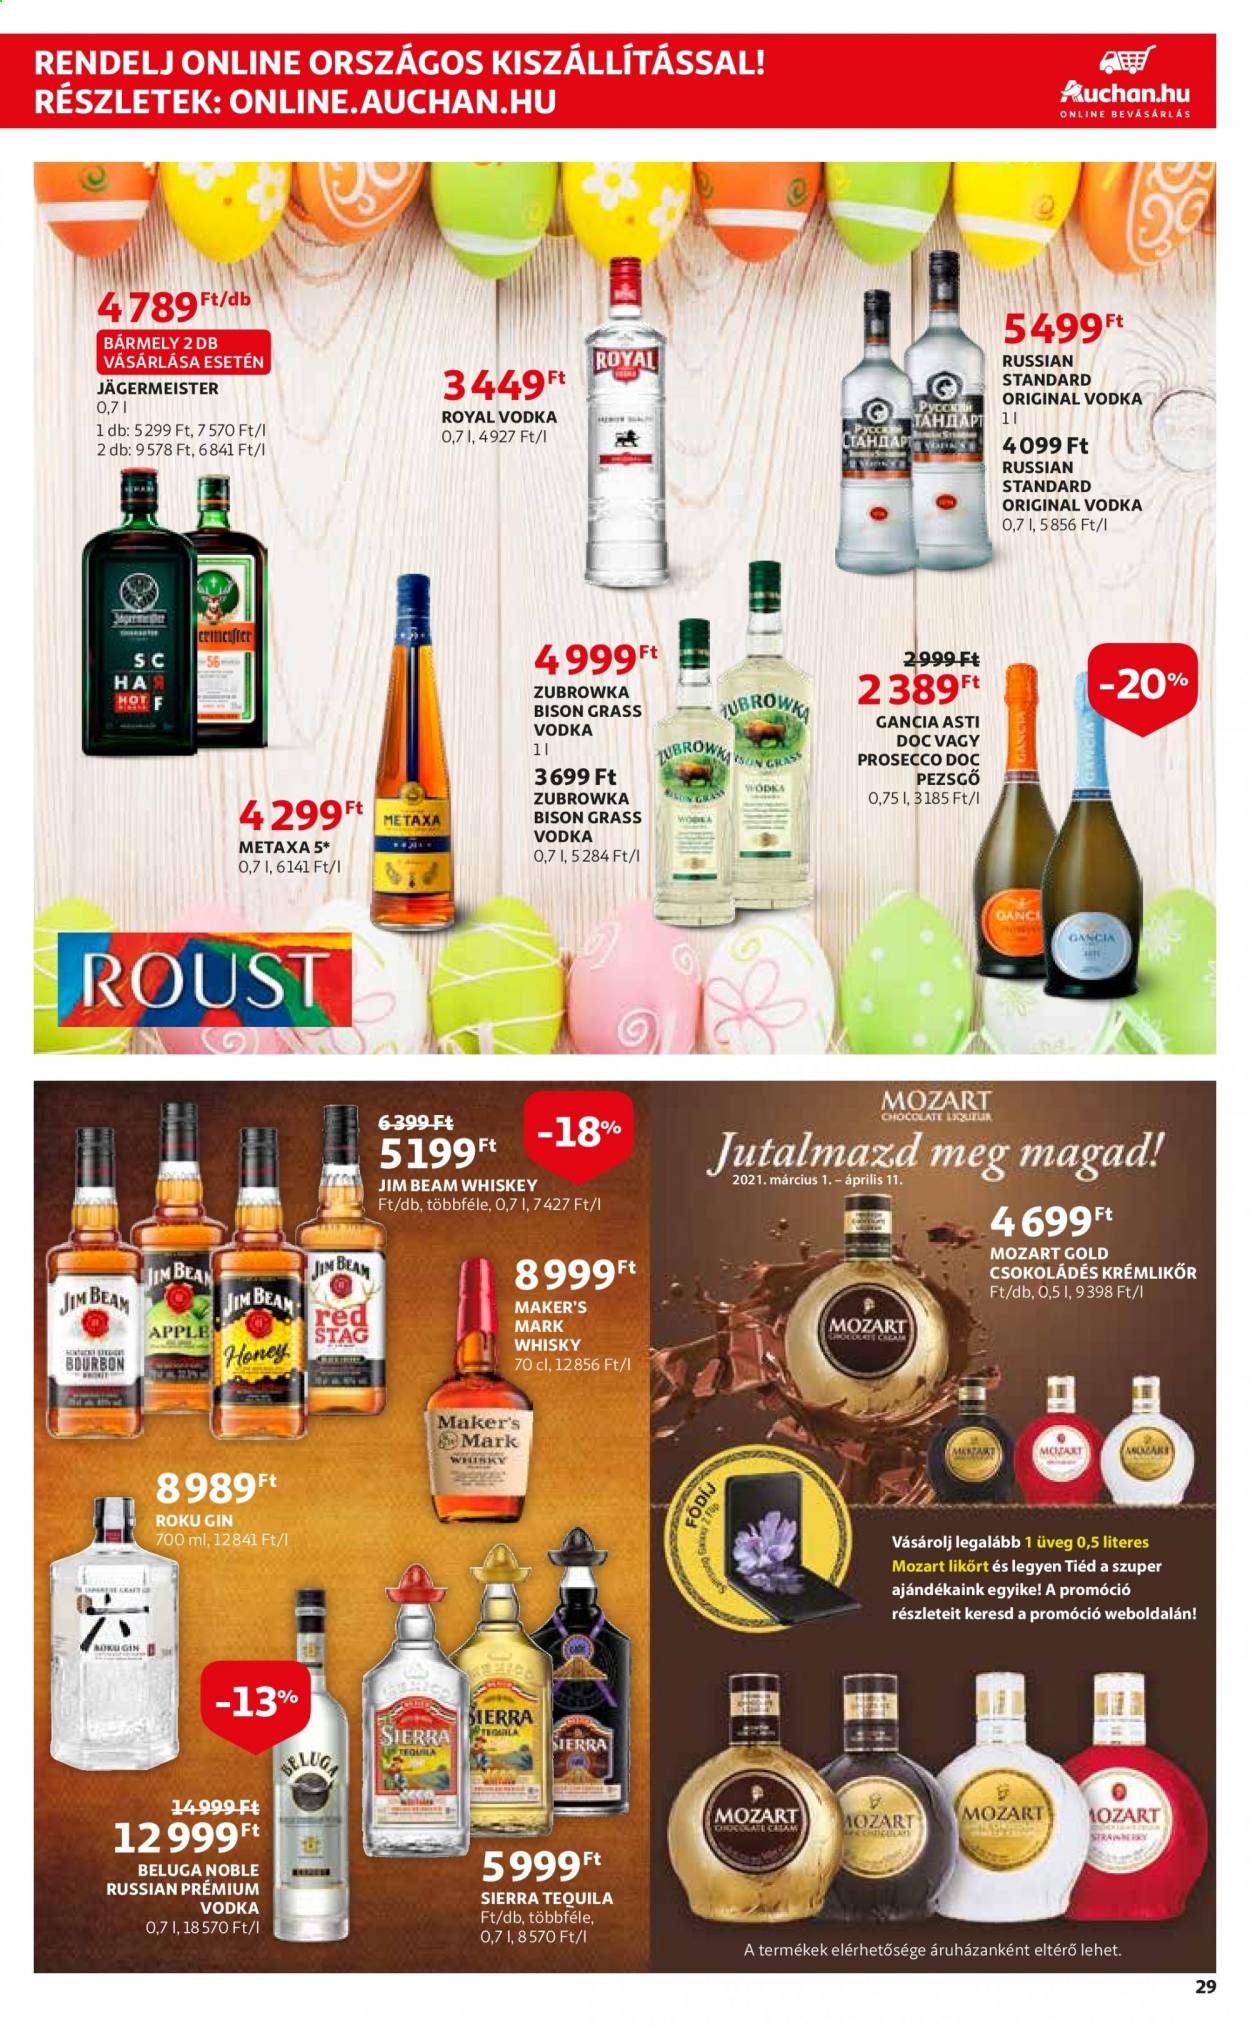 thumbnail - Auchan akciós újsága  - 2021.03.04 - 2021.03.10 - Akciós termékek - pezsgő, prosecco, bourbon, gin, Metaxa, Tequila, vodka, whisky, Jägermeister, Jim Beam.  29. Oldal